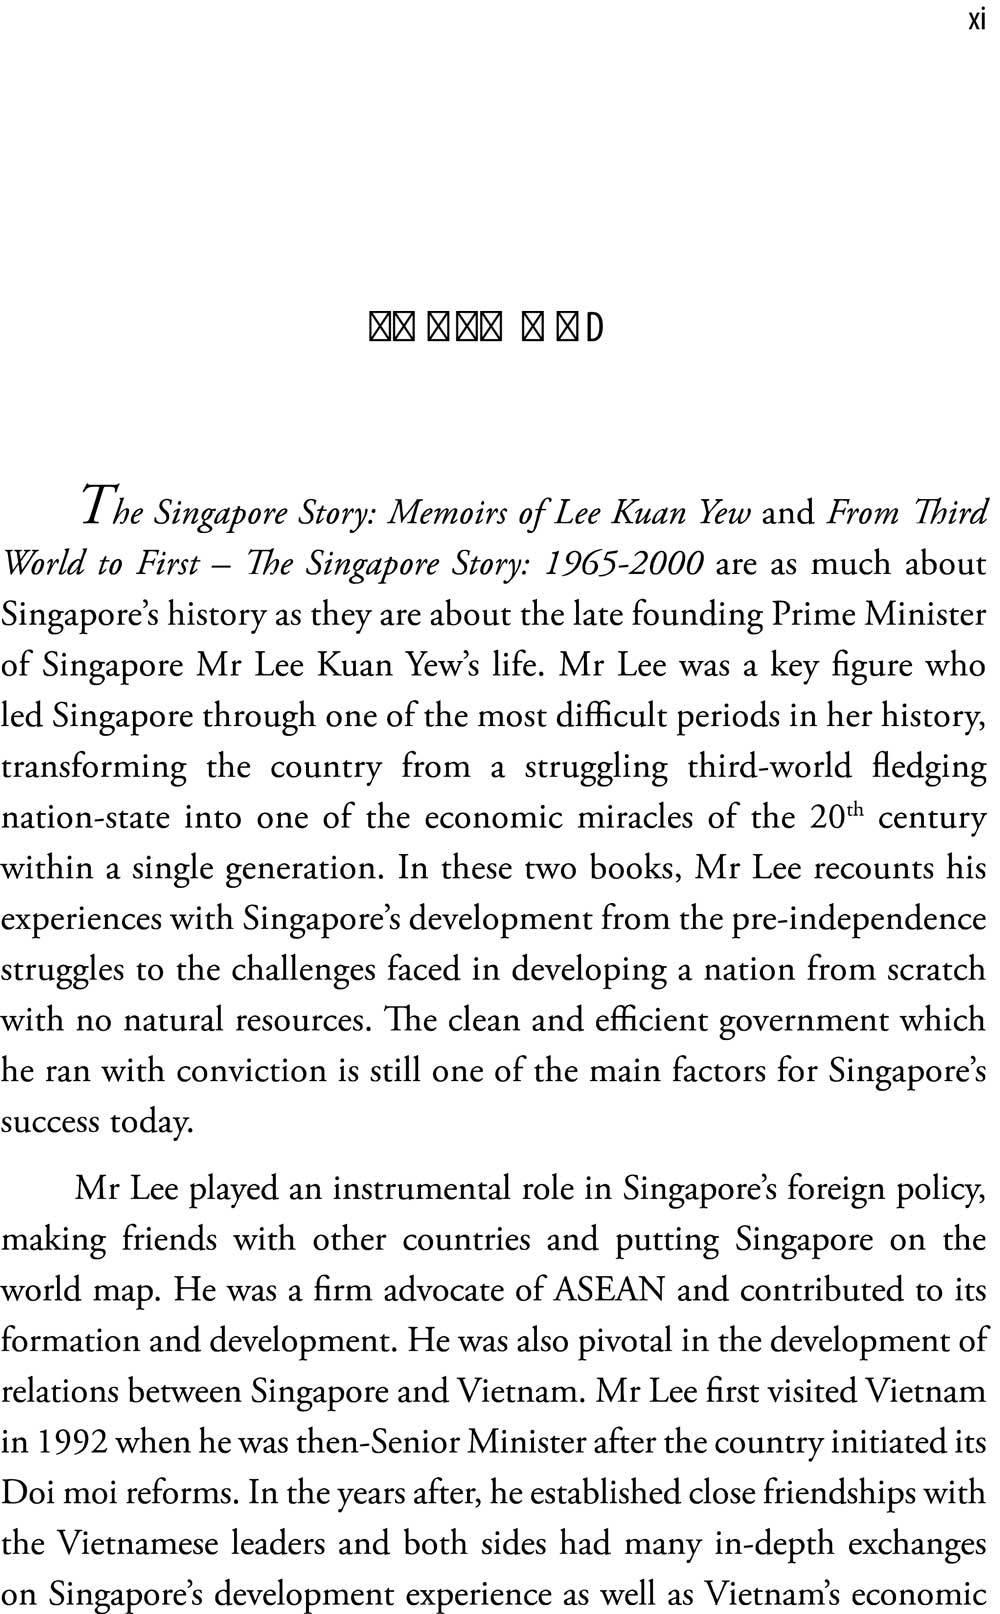 Hồi Ký Lý Quang Diệu - Câu Chuyện Singapore _AL